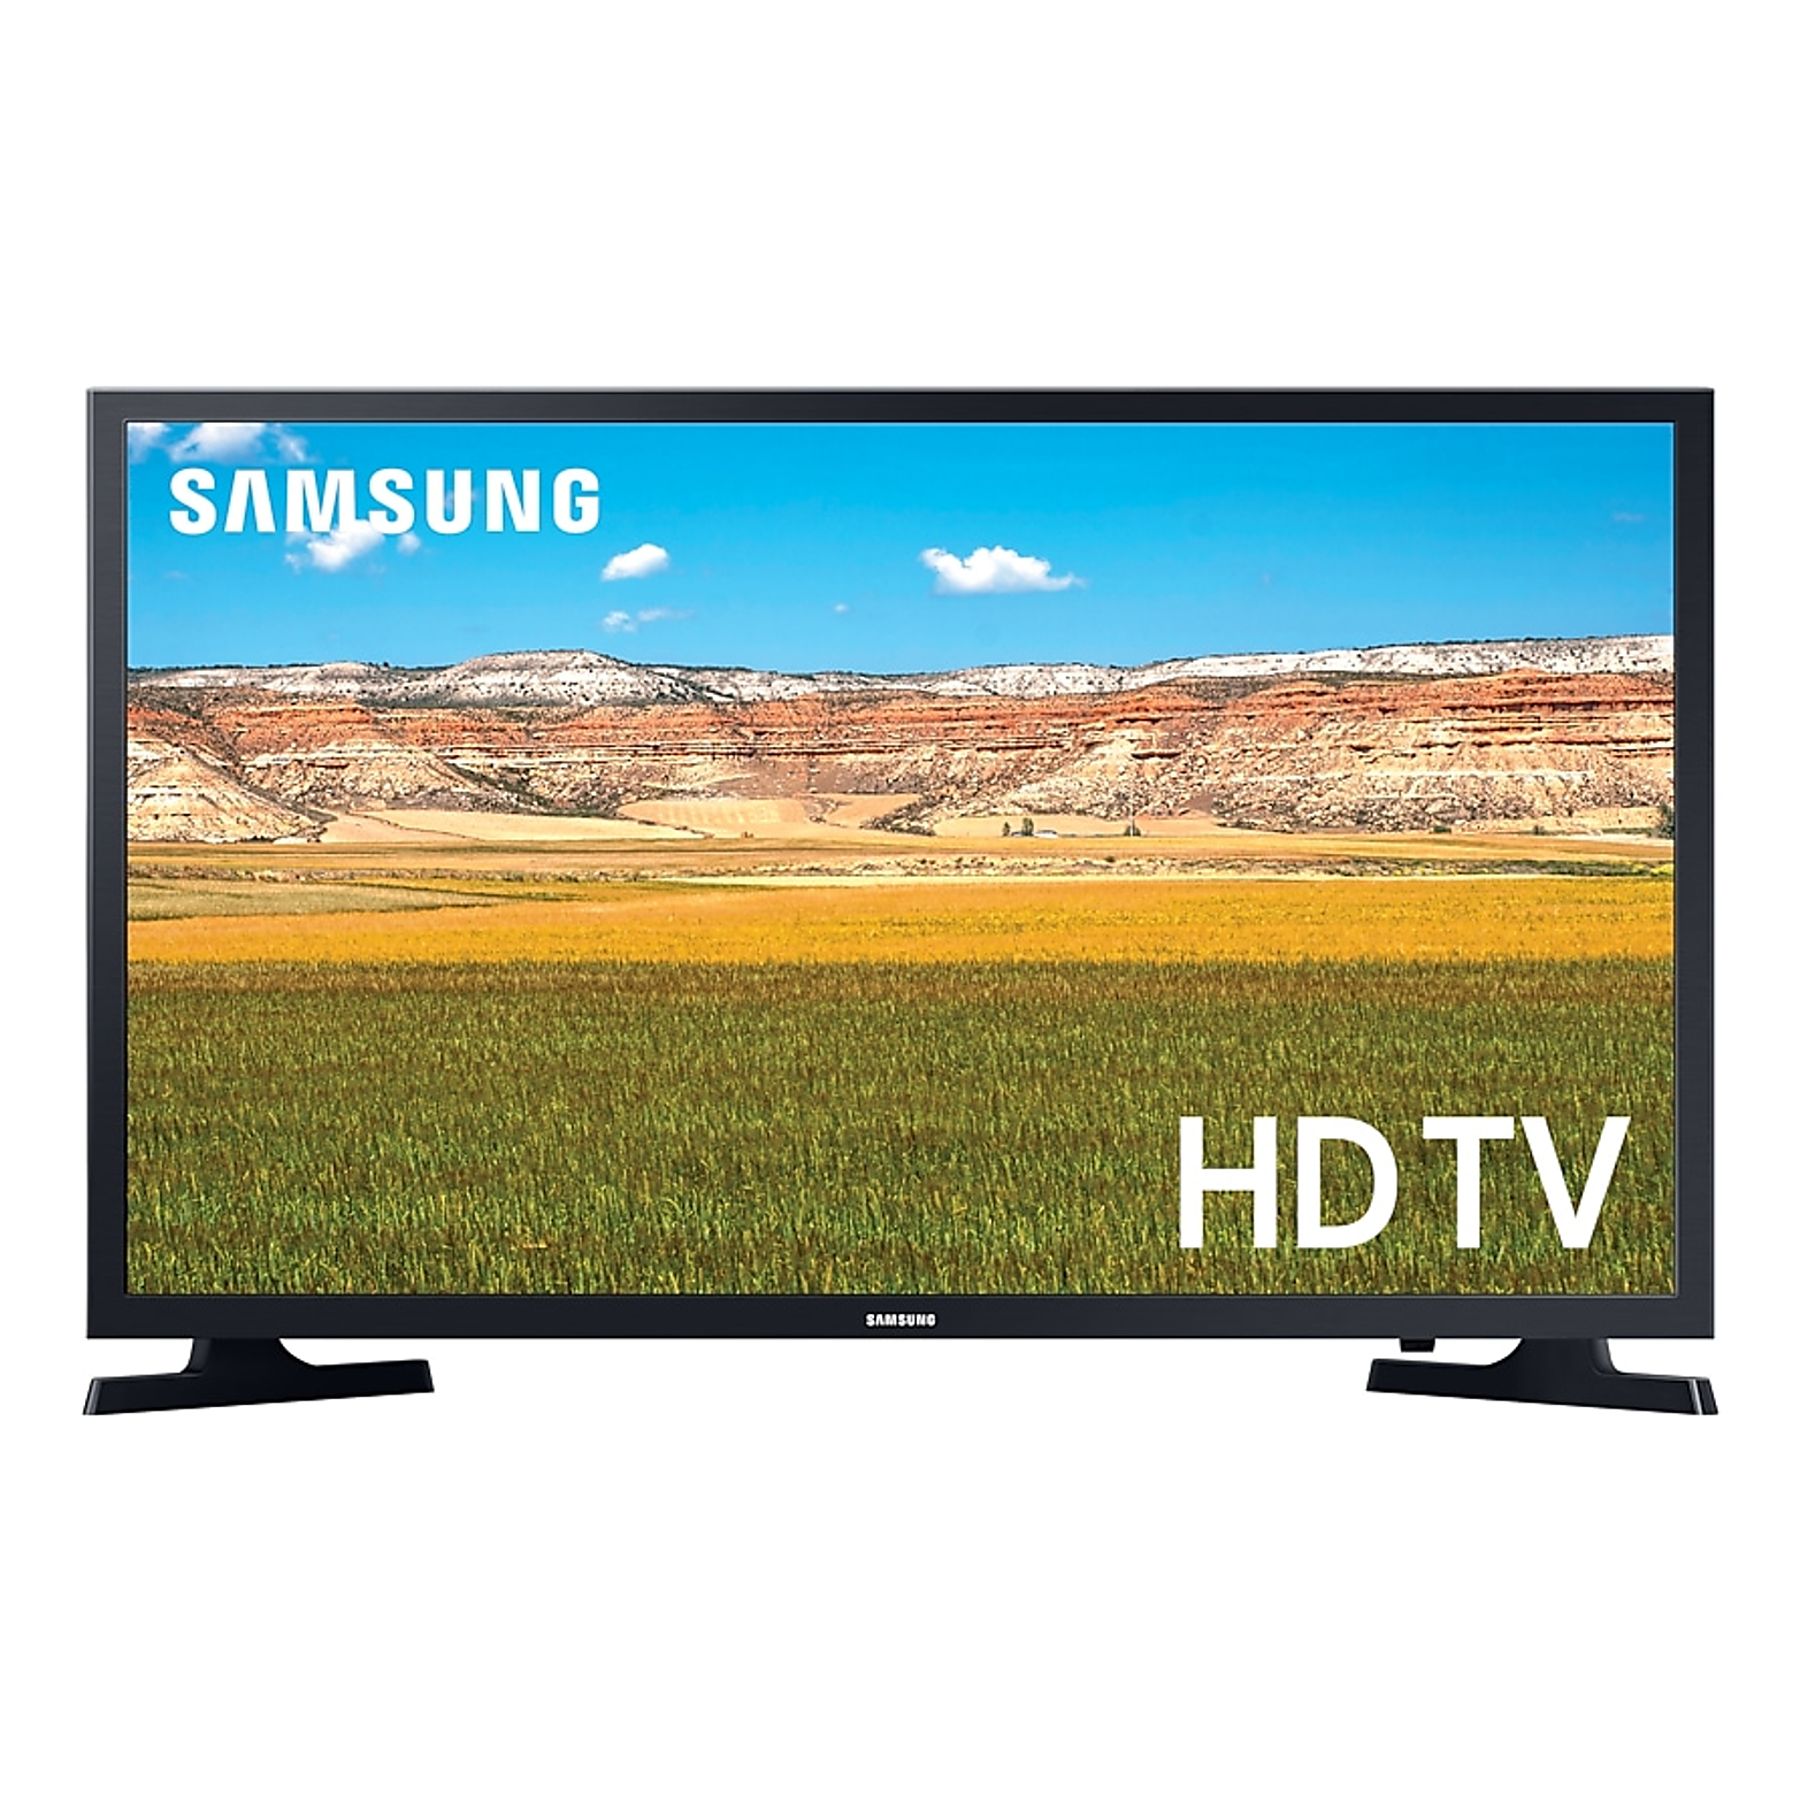 TV LED 28 - LG 28TN515V, HD, DVB-T2 (H.265), Negro